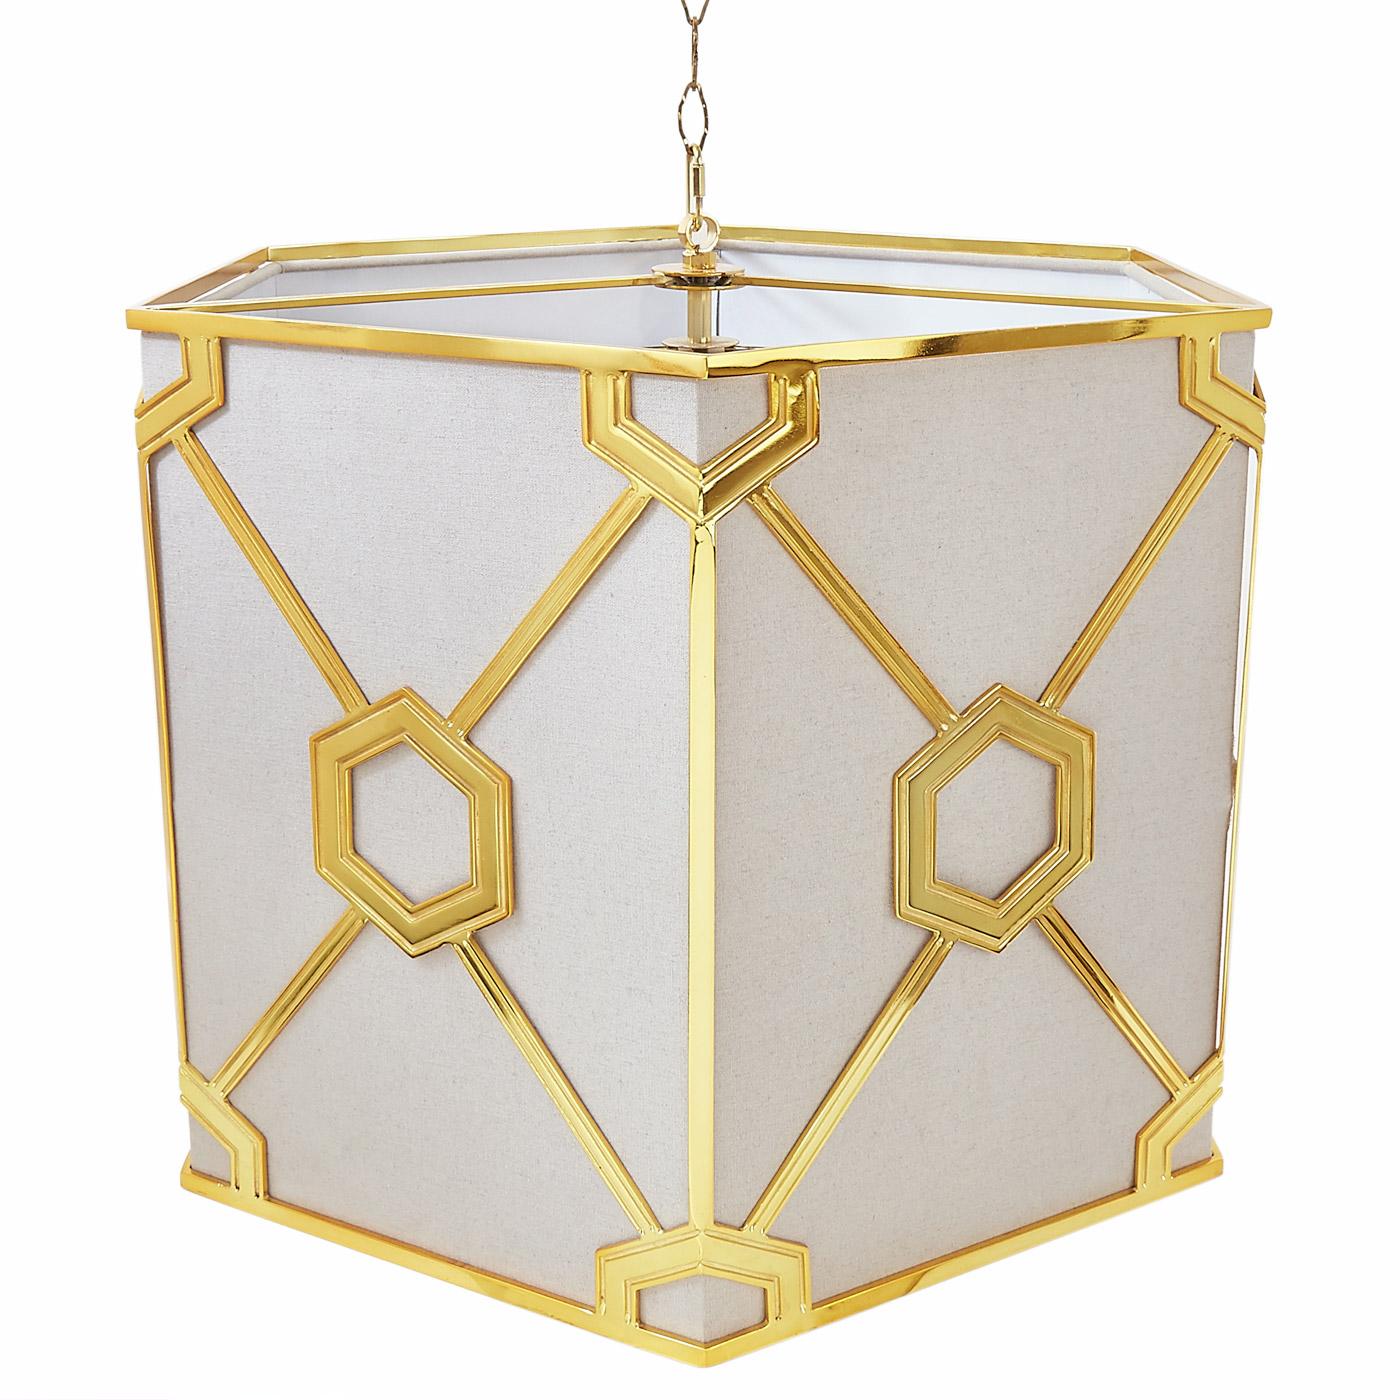 Le lustre Turner, conçu par Jonathan Adler, est un magnifique cadre en laiton de forme hexagonale avec un abat-jour interne en lin doux de couleur tourterelle.  Livré avec une chaîne de suspension en laiton de 2 pieds, un plafonnier, la